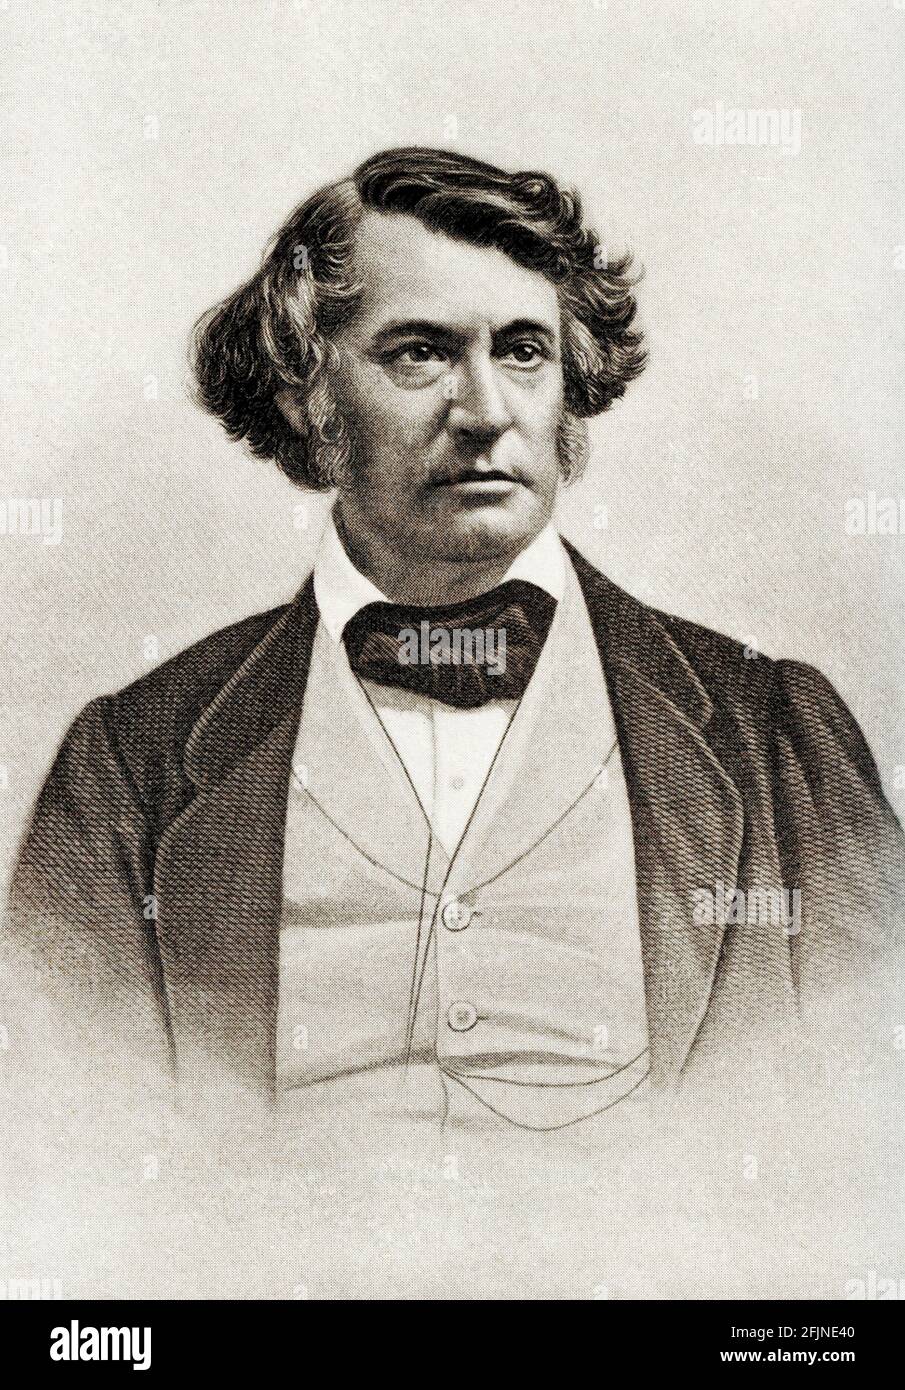 Charles Sumner (1811-1874) fue un estadista estadounidense y senador estadounidense de Massachusetts. Como abogado académico y un poderoso orador, Sumner fue el líder de las fuerzas anti-esclavitud en el estado y un líder de los republicanos radicales en el Senado de los Estados Unidos durante la Guerra Civil Americana. Foto de stock